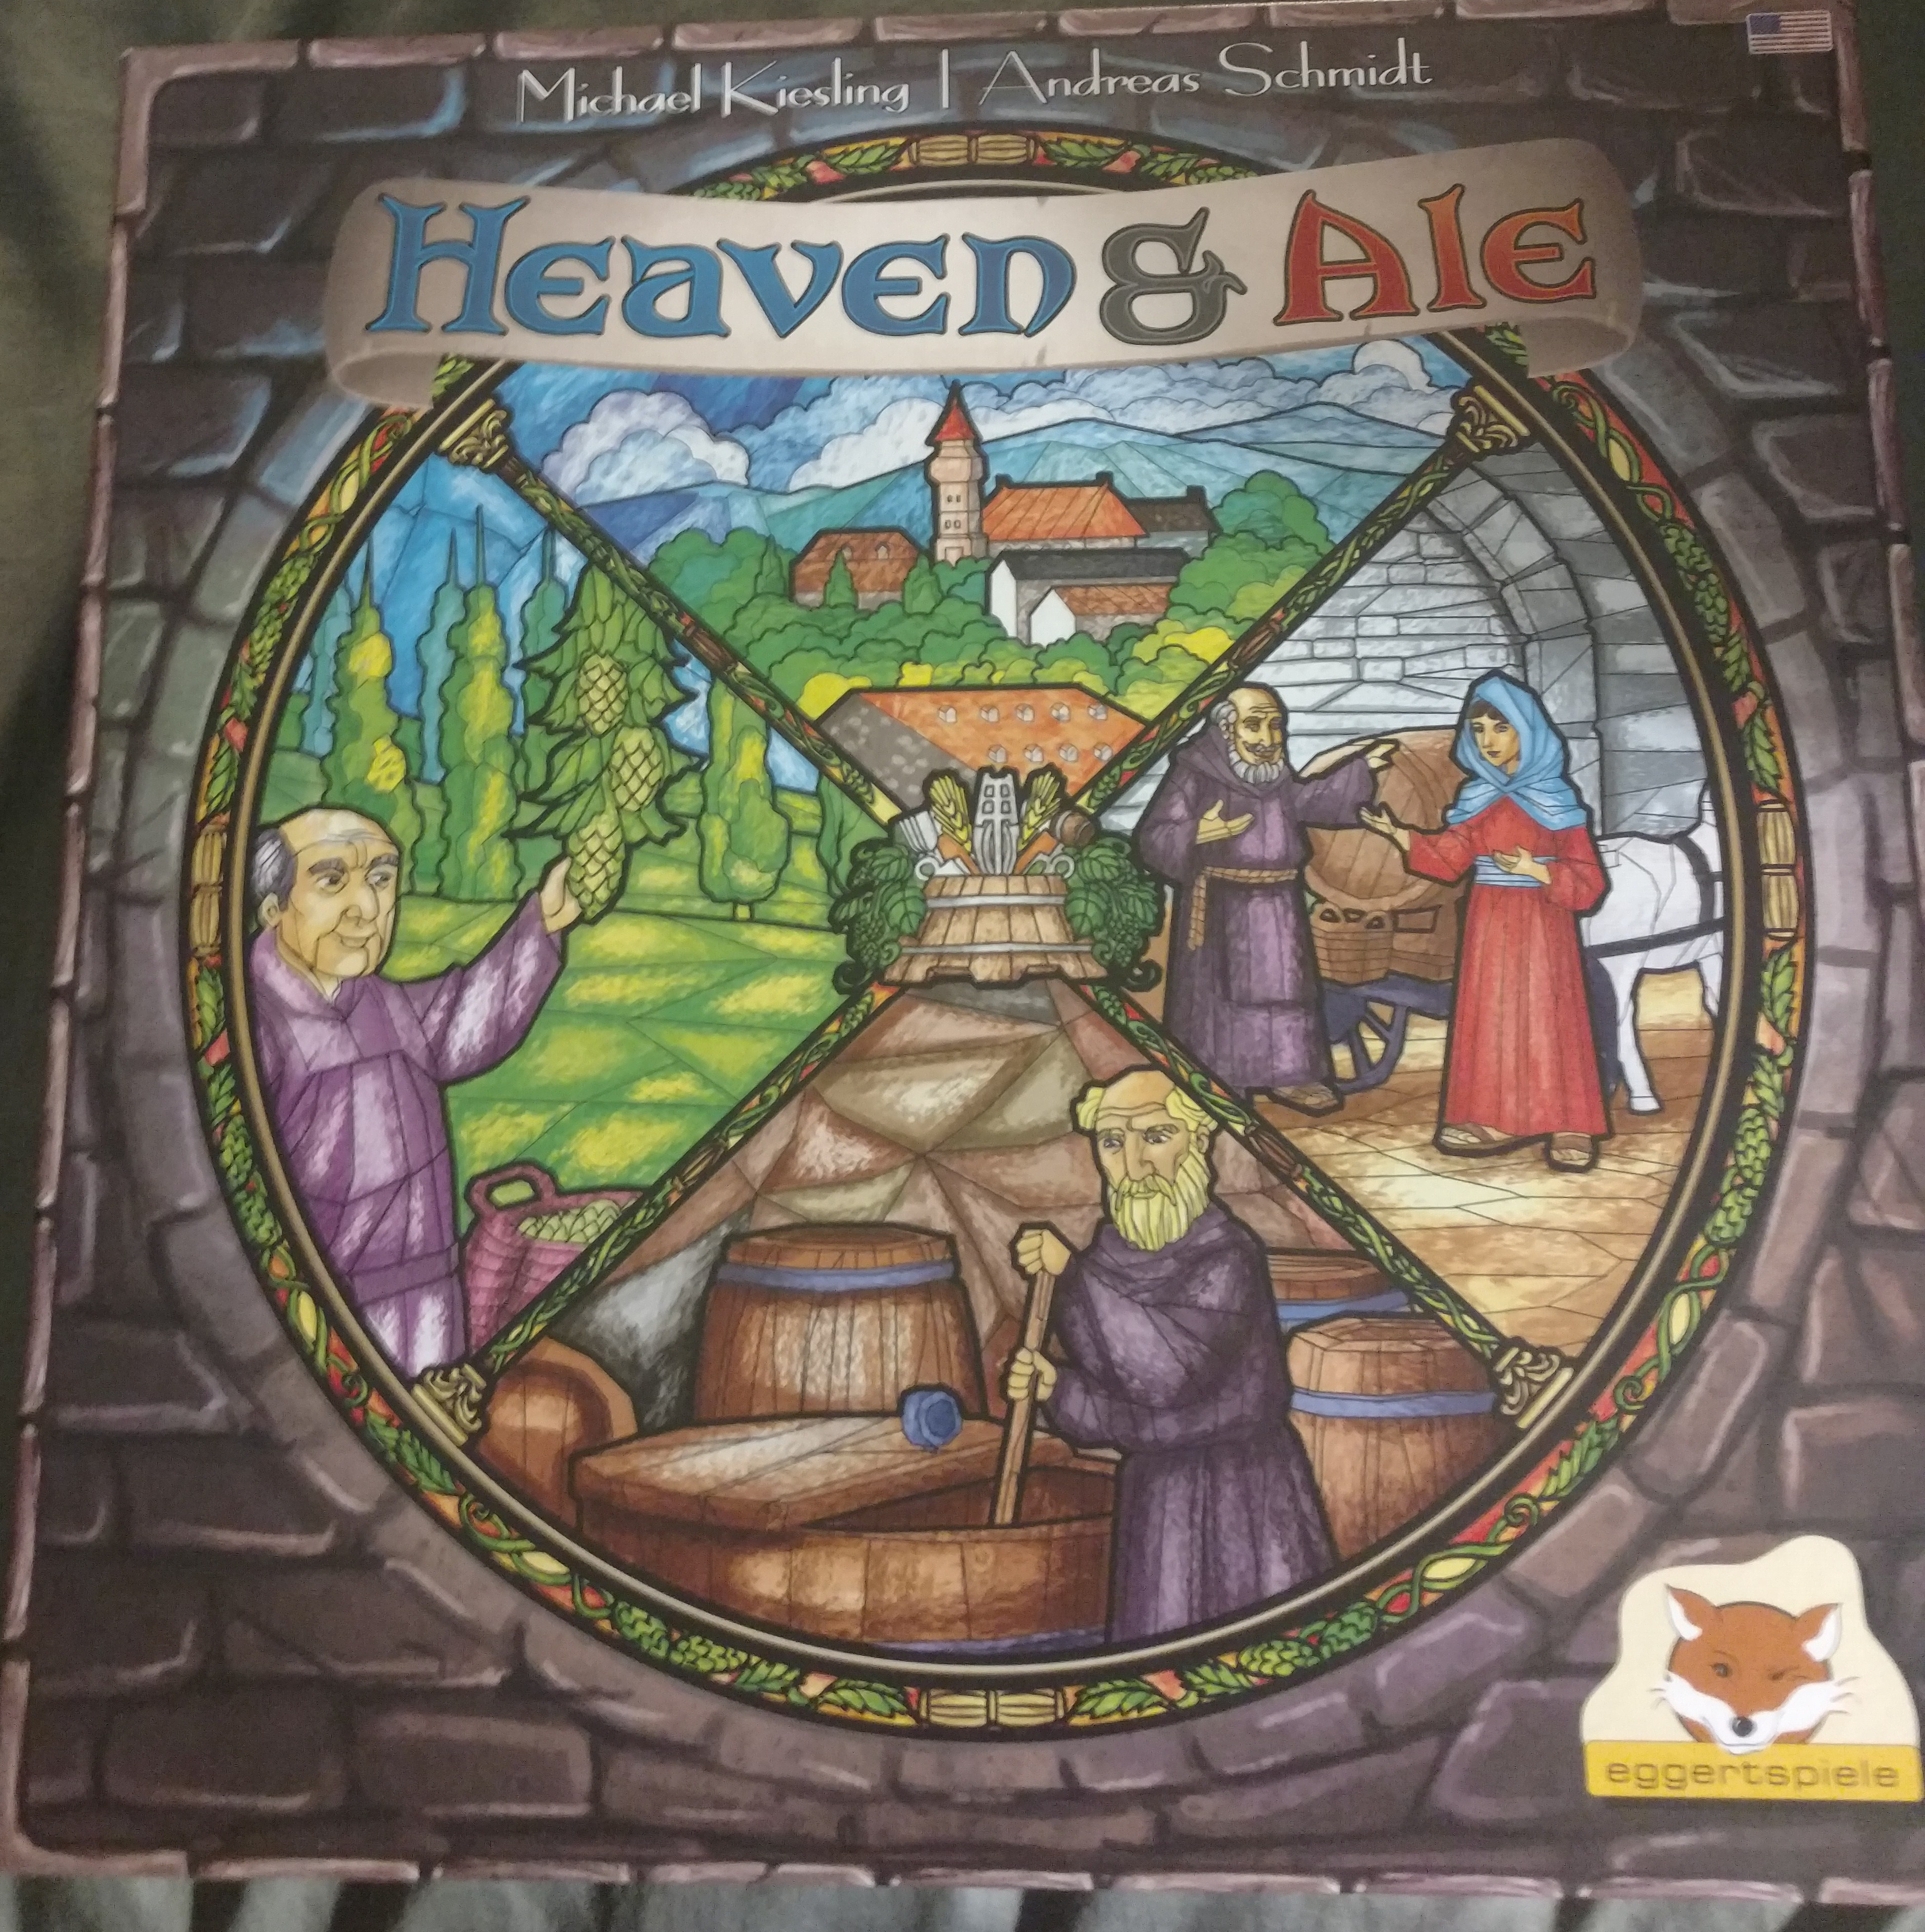 heaven & ale board game